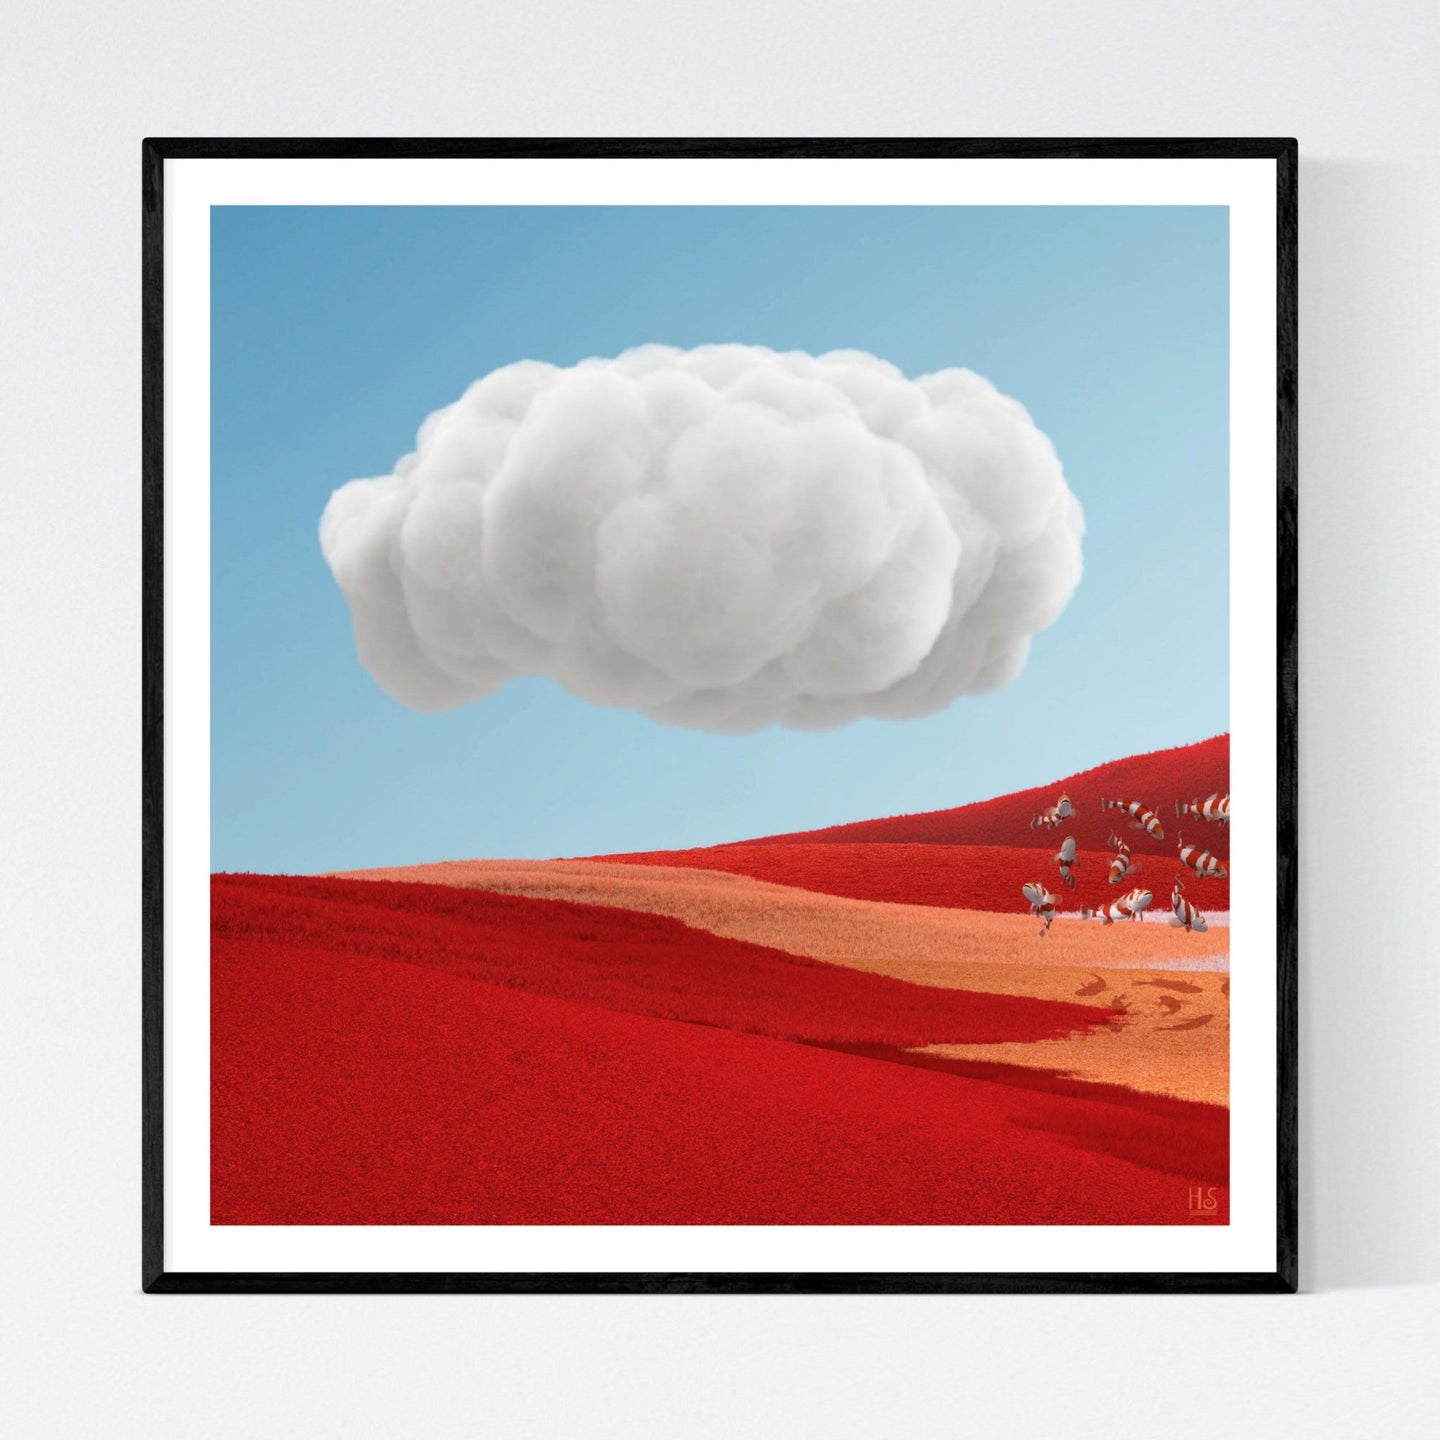 The Cloud - moderne surrealistisk kunst, der viser et meget rødt bakket landskab, hvor en lille flok eksotiske og rødstribede fisk boltrer sig i luften. Over dem, på en meget klar og blå himmel, er der en meget kompakt stor hvid sky - af surrealist og billedkunstner Hugo Sax